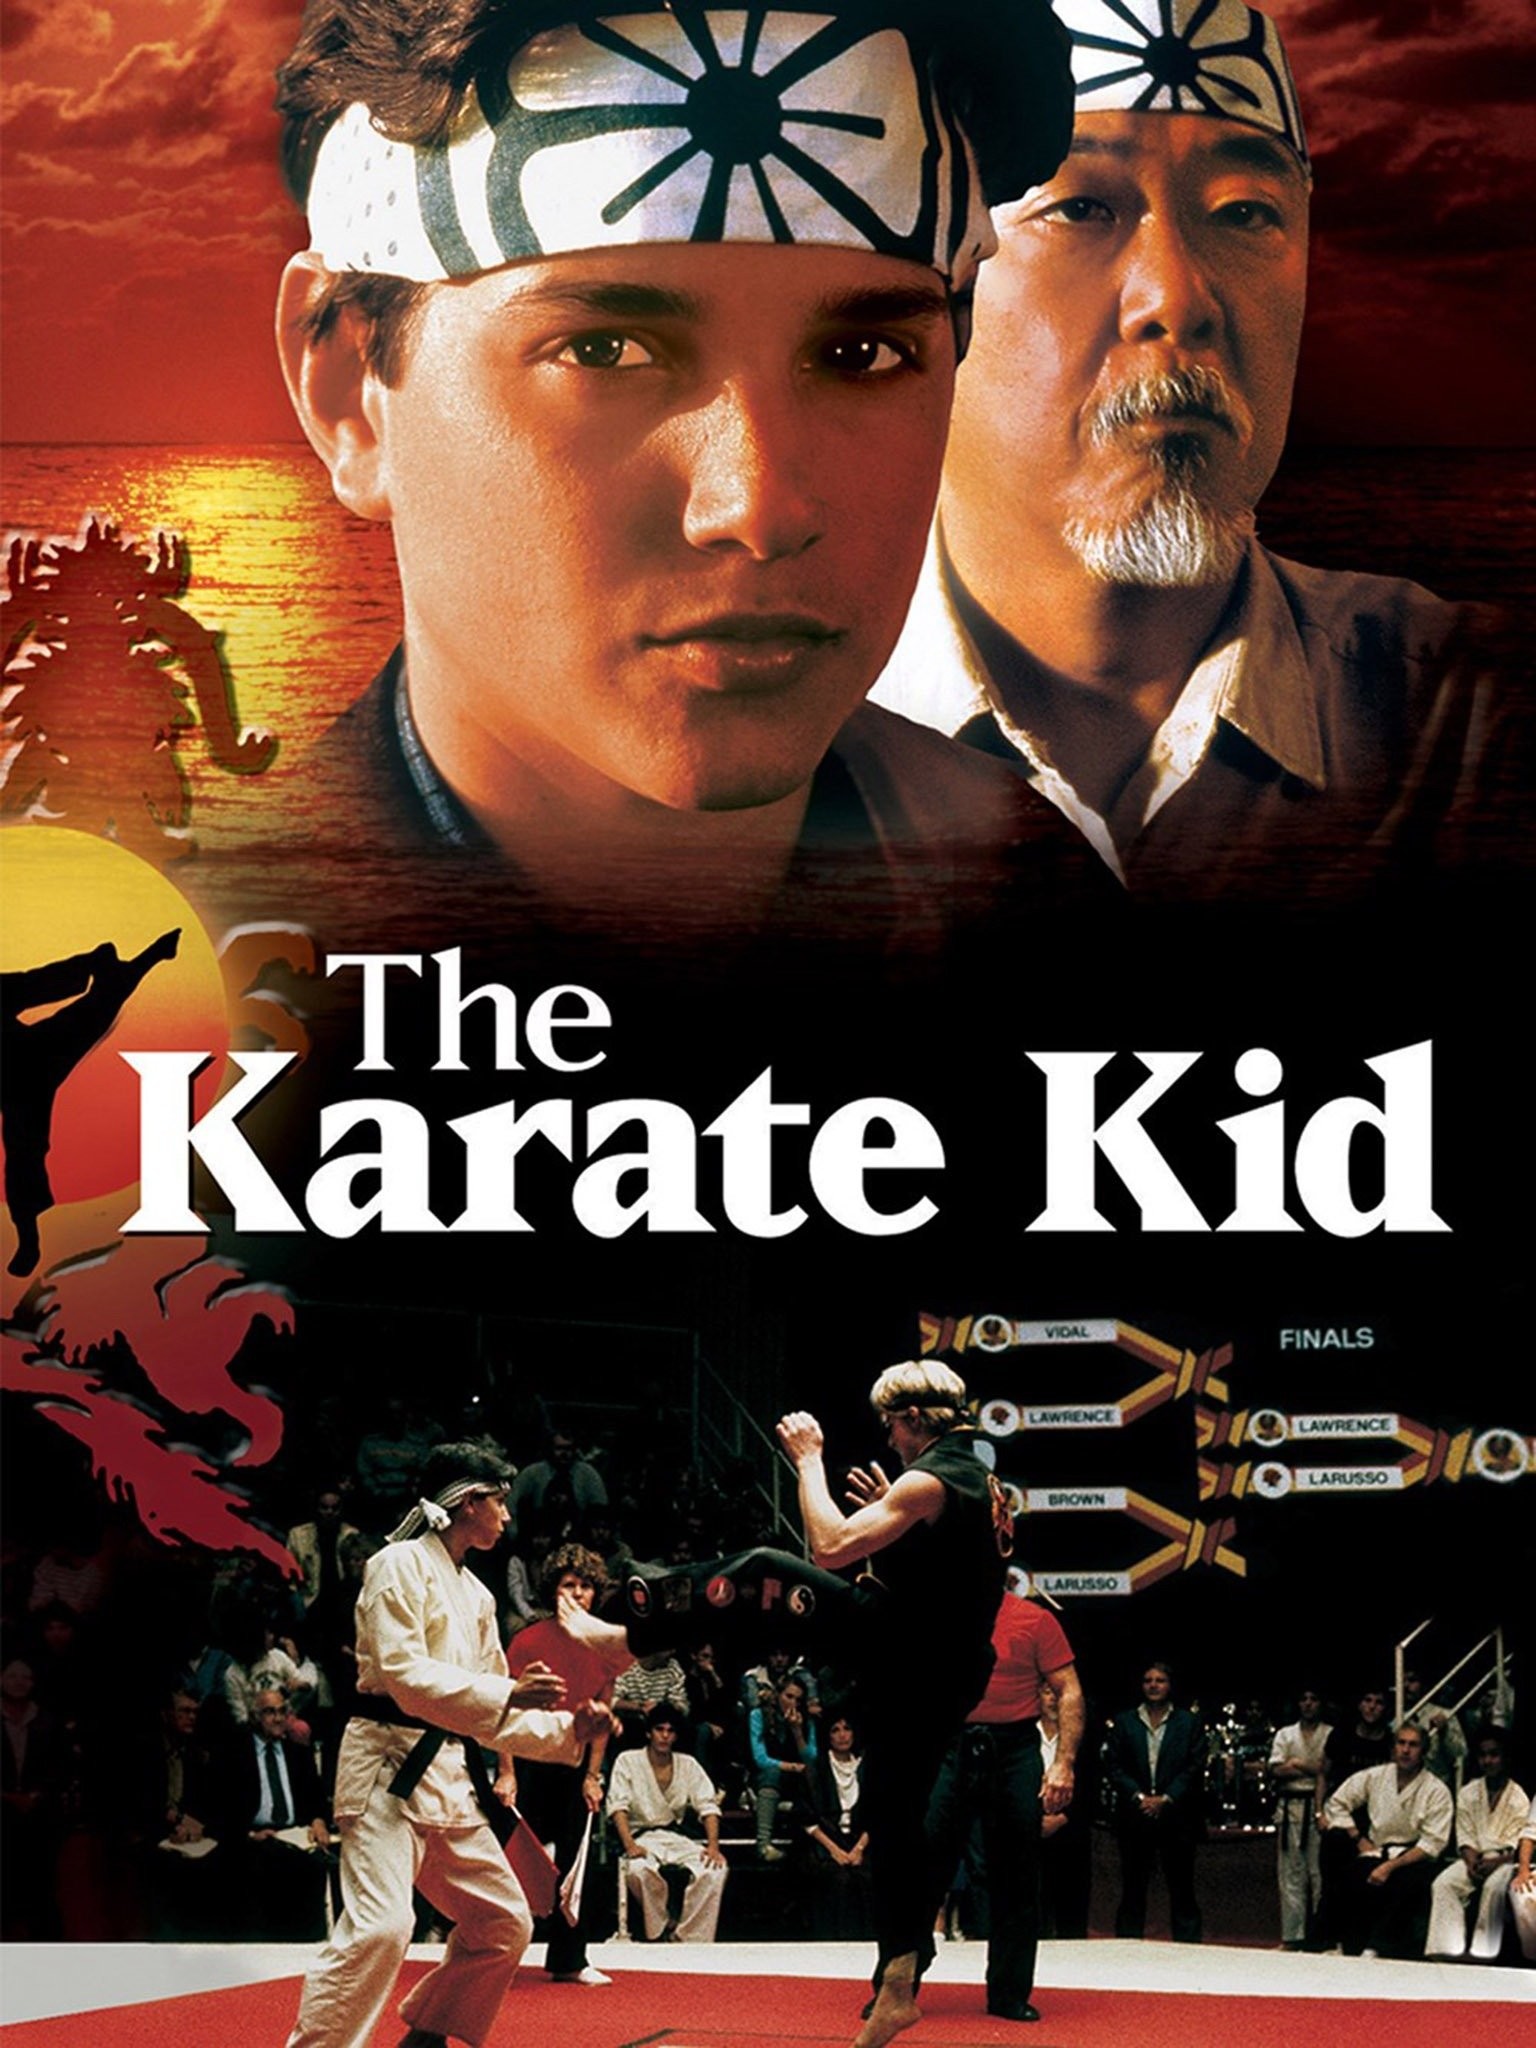 The Karate Kid (2010 film) - Wikipedia